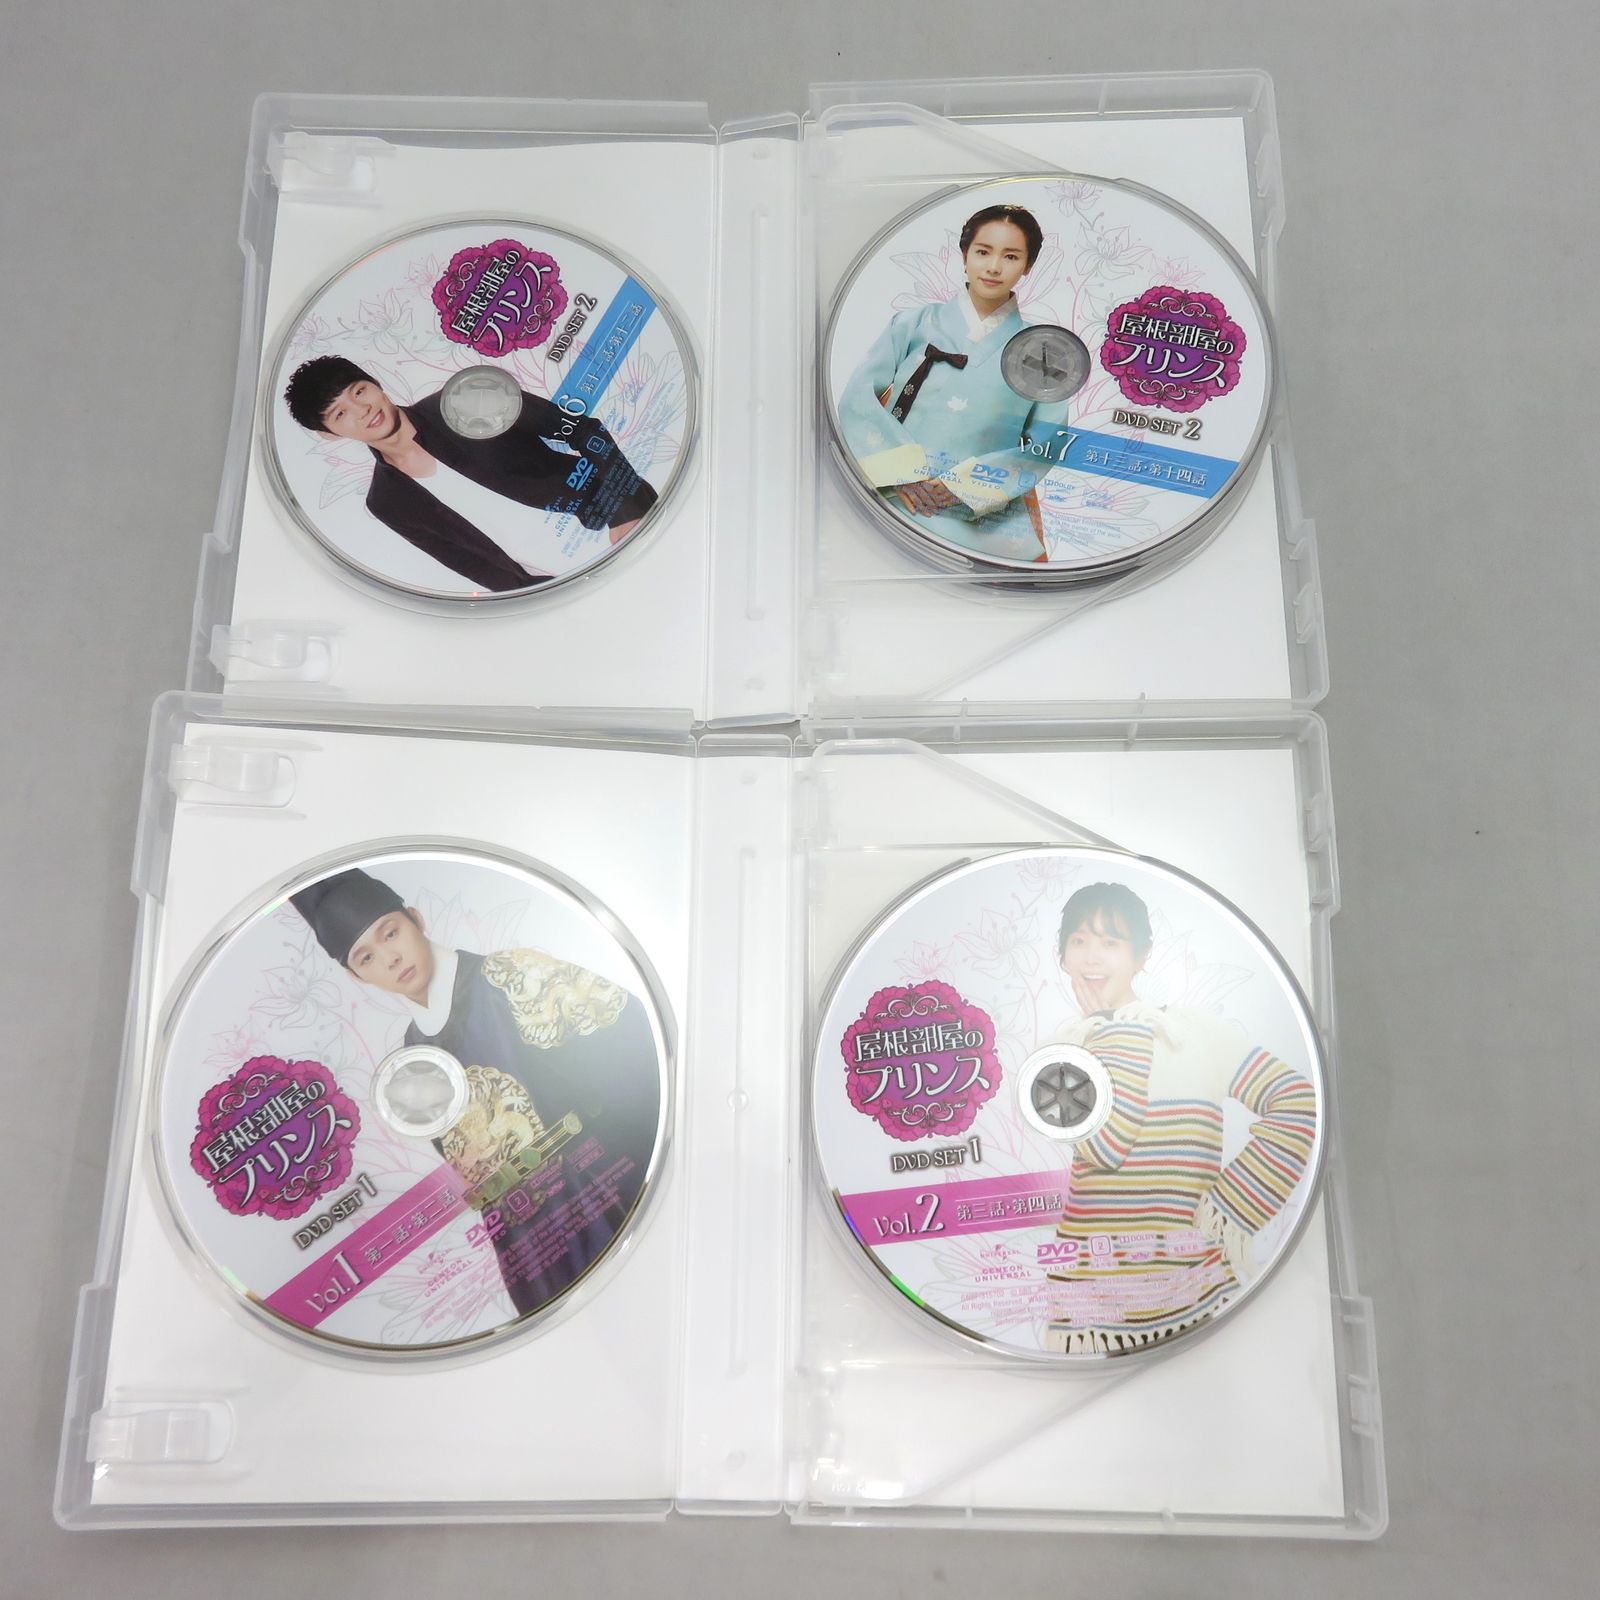 屋根部屋のプリンス DVD SET 1+2〈10枚組〉 ポストカード欠品 - メルカリ